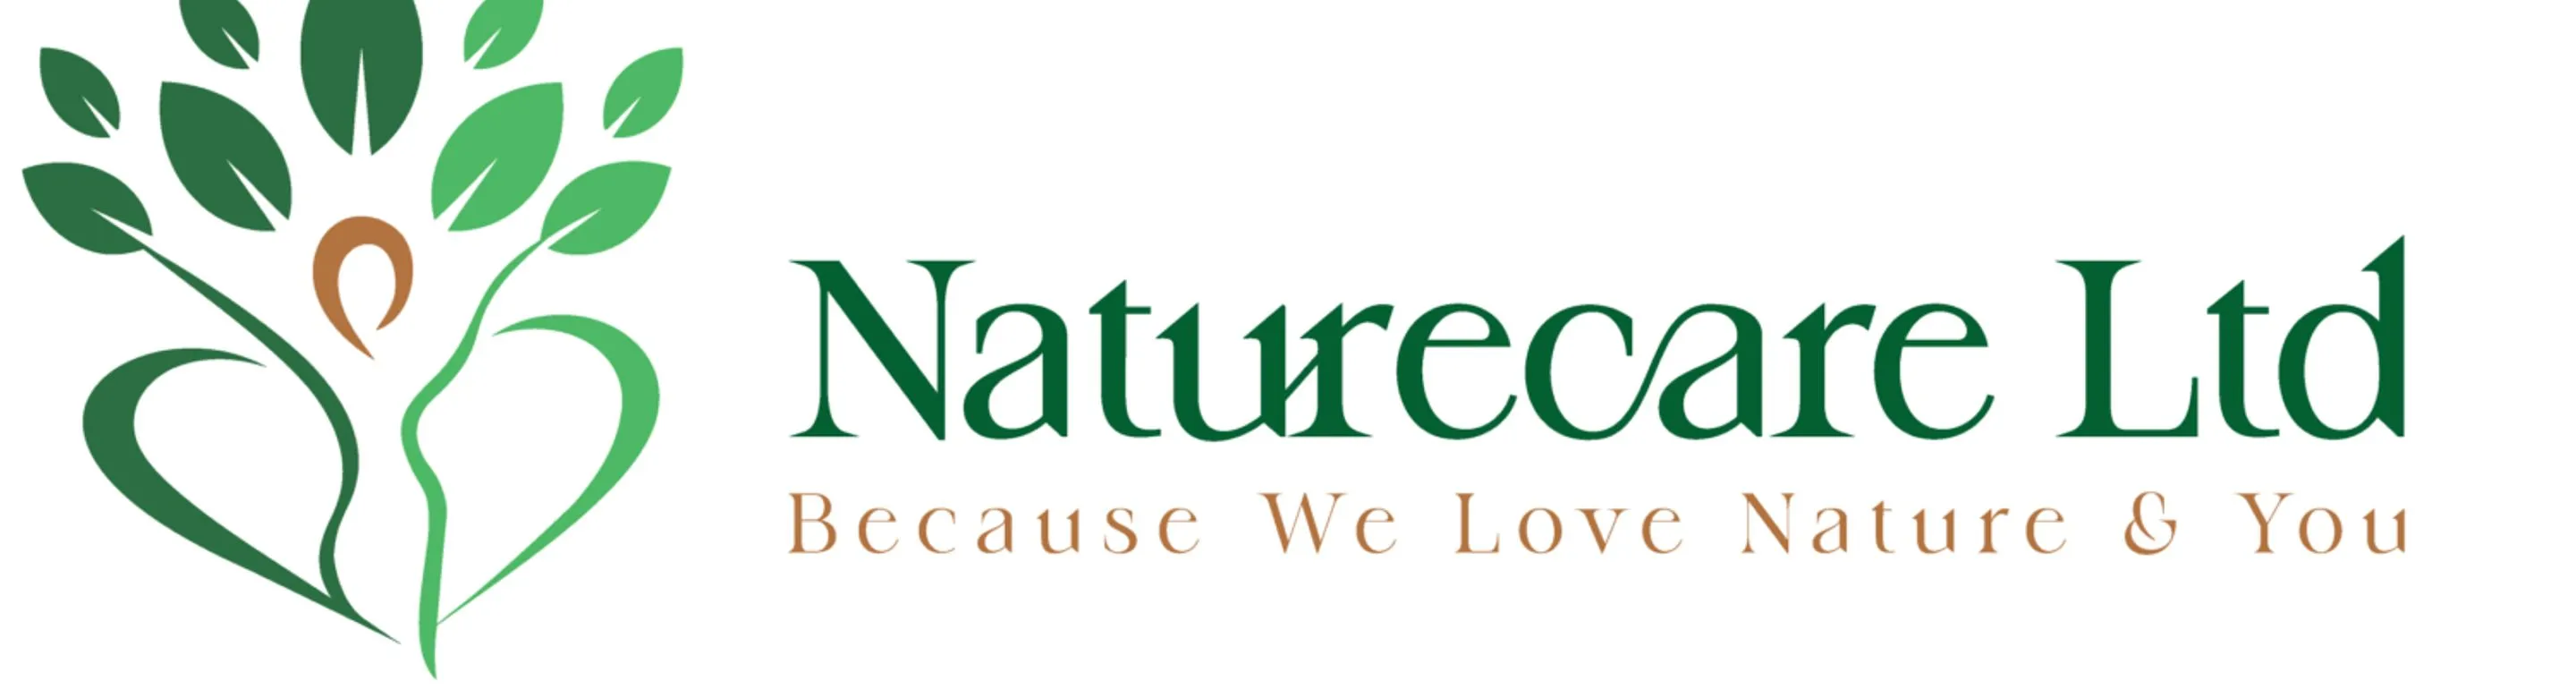 Naturecare Ltd